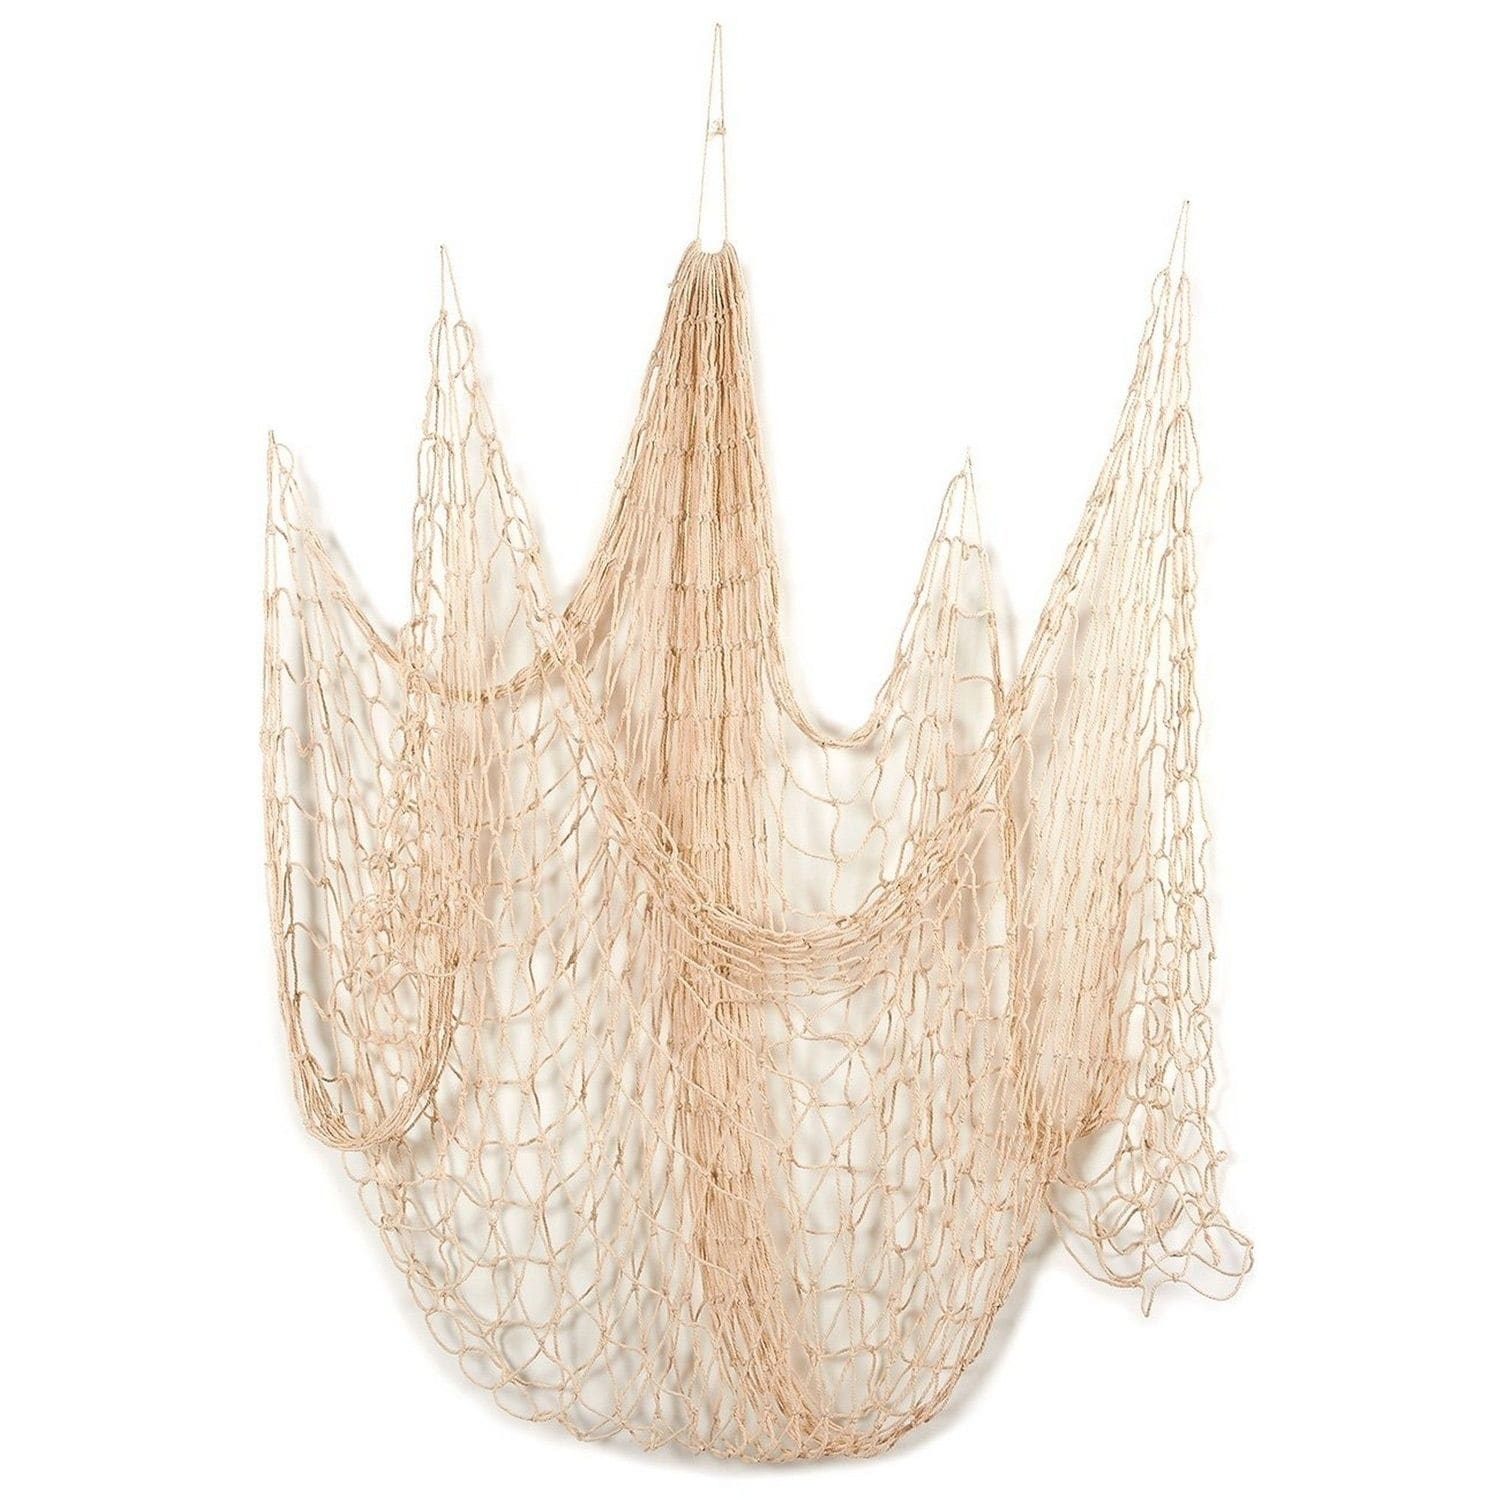 Authentic Used Fishing Net - Decorative Nautical Decor